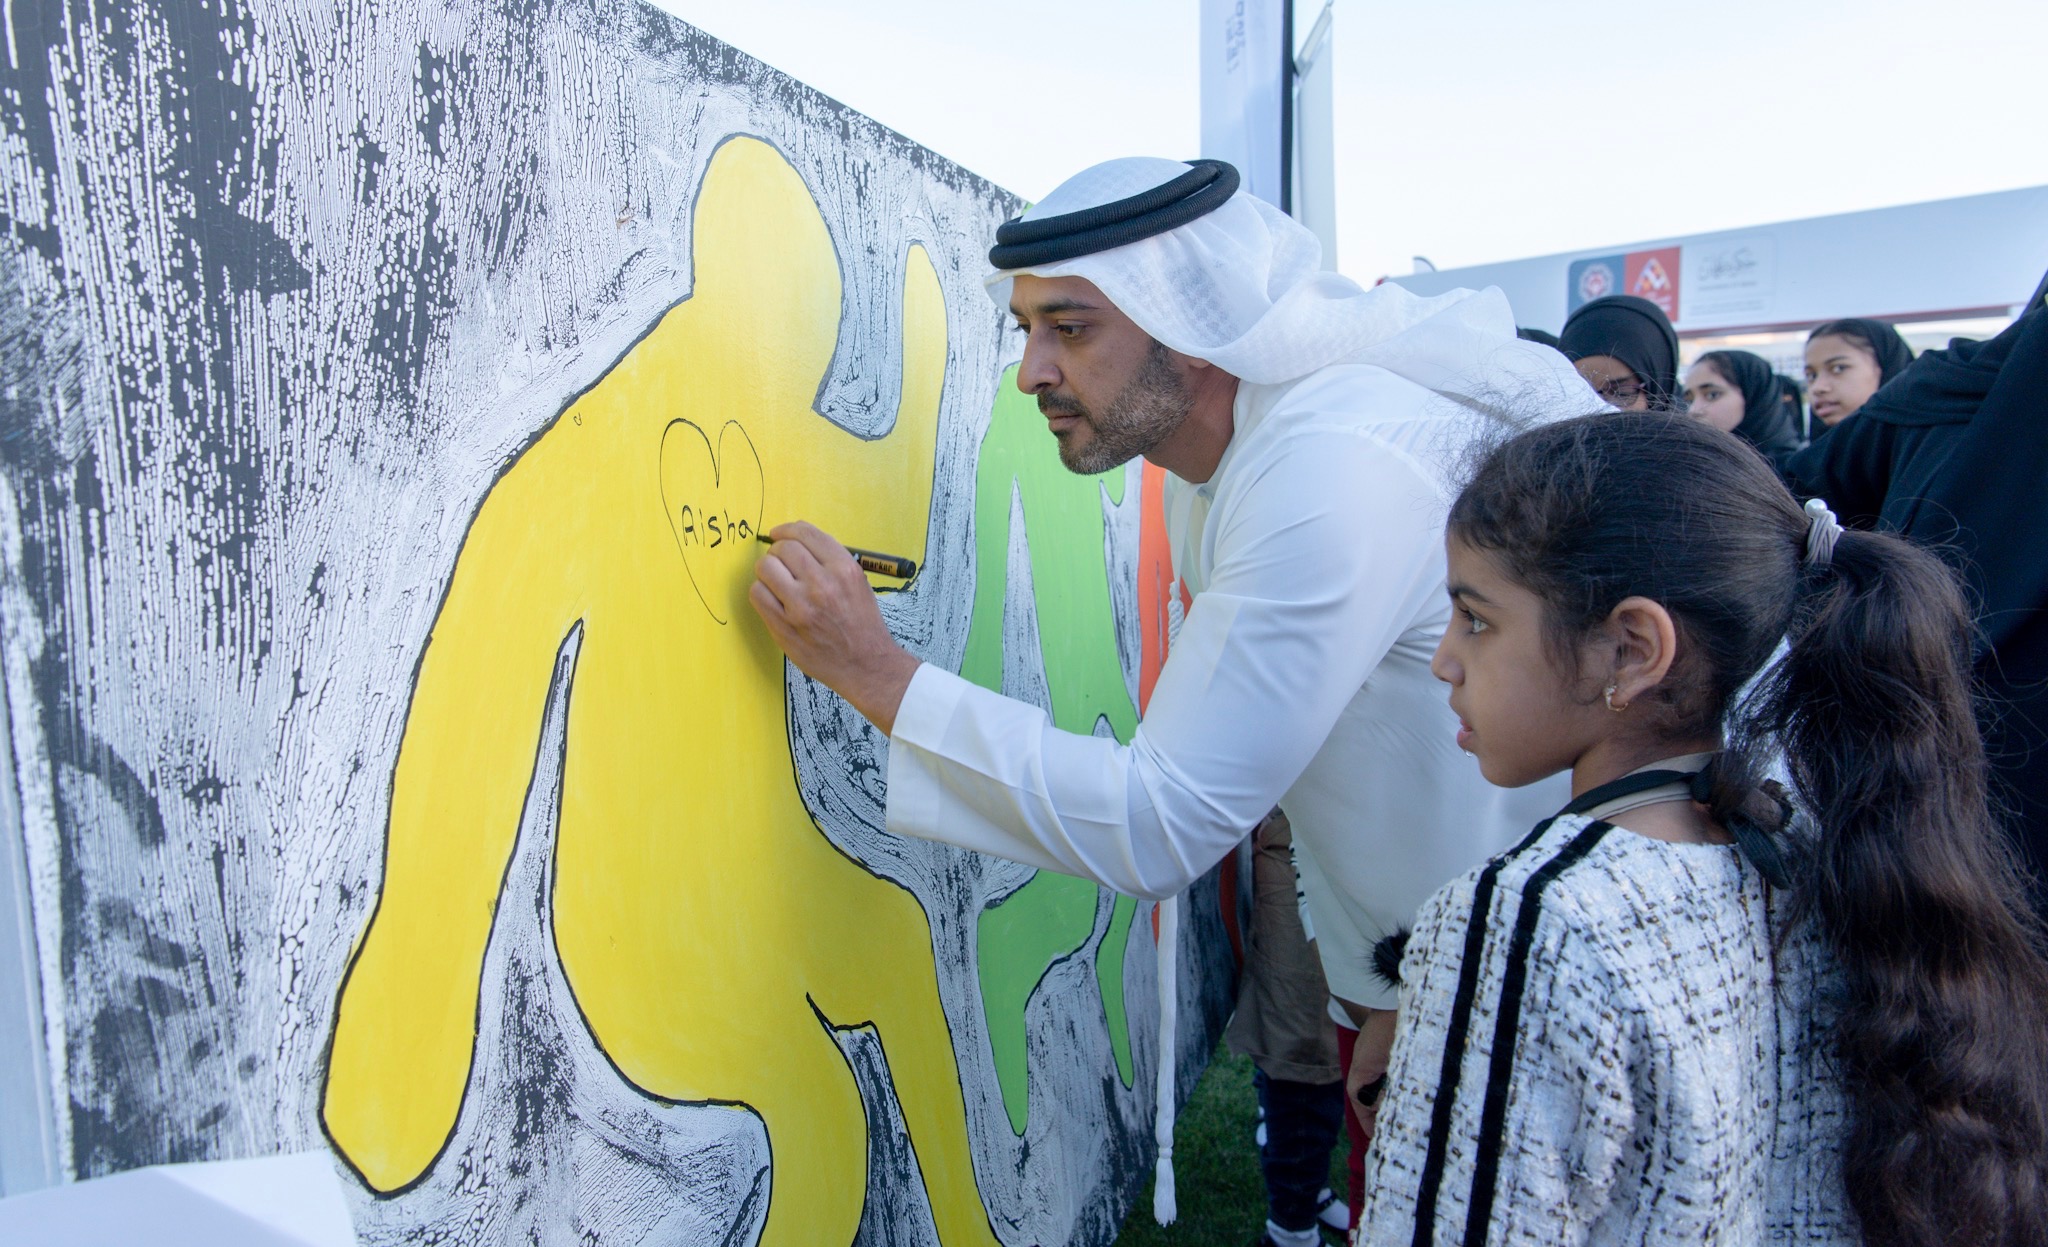 ‫عبدالعزيز النعيمي يشارك أصحاب الهمم في مبادرة "نمشي معاً" في عجمان‬